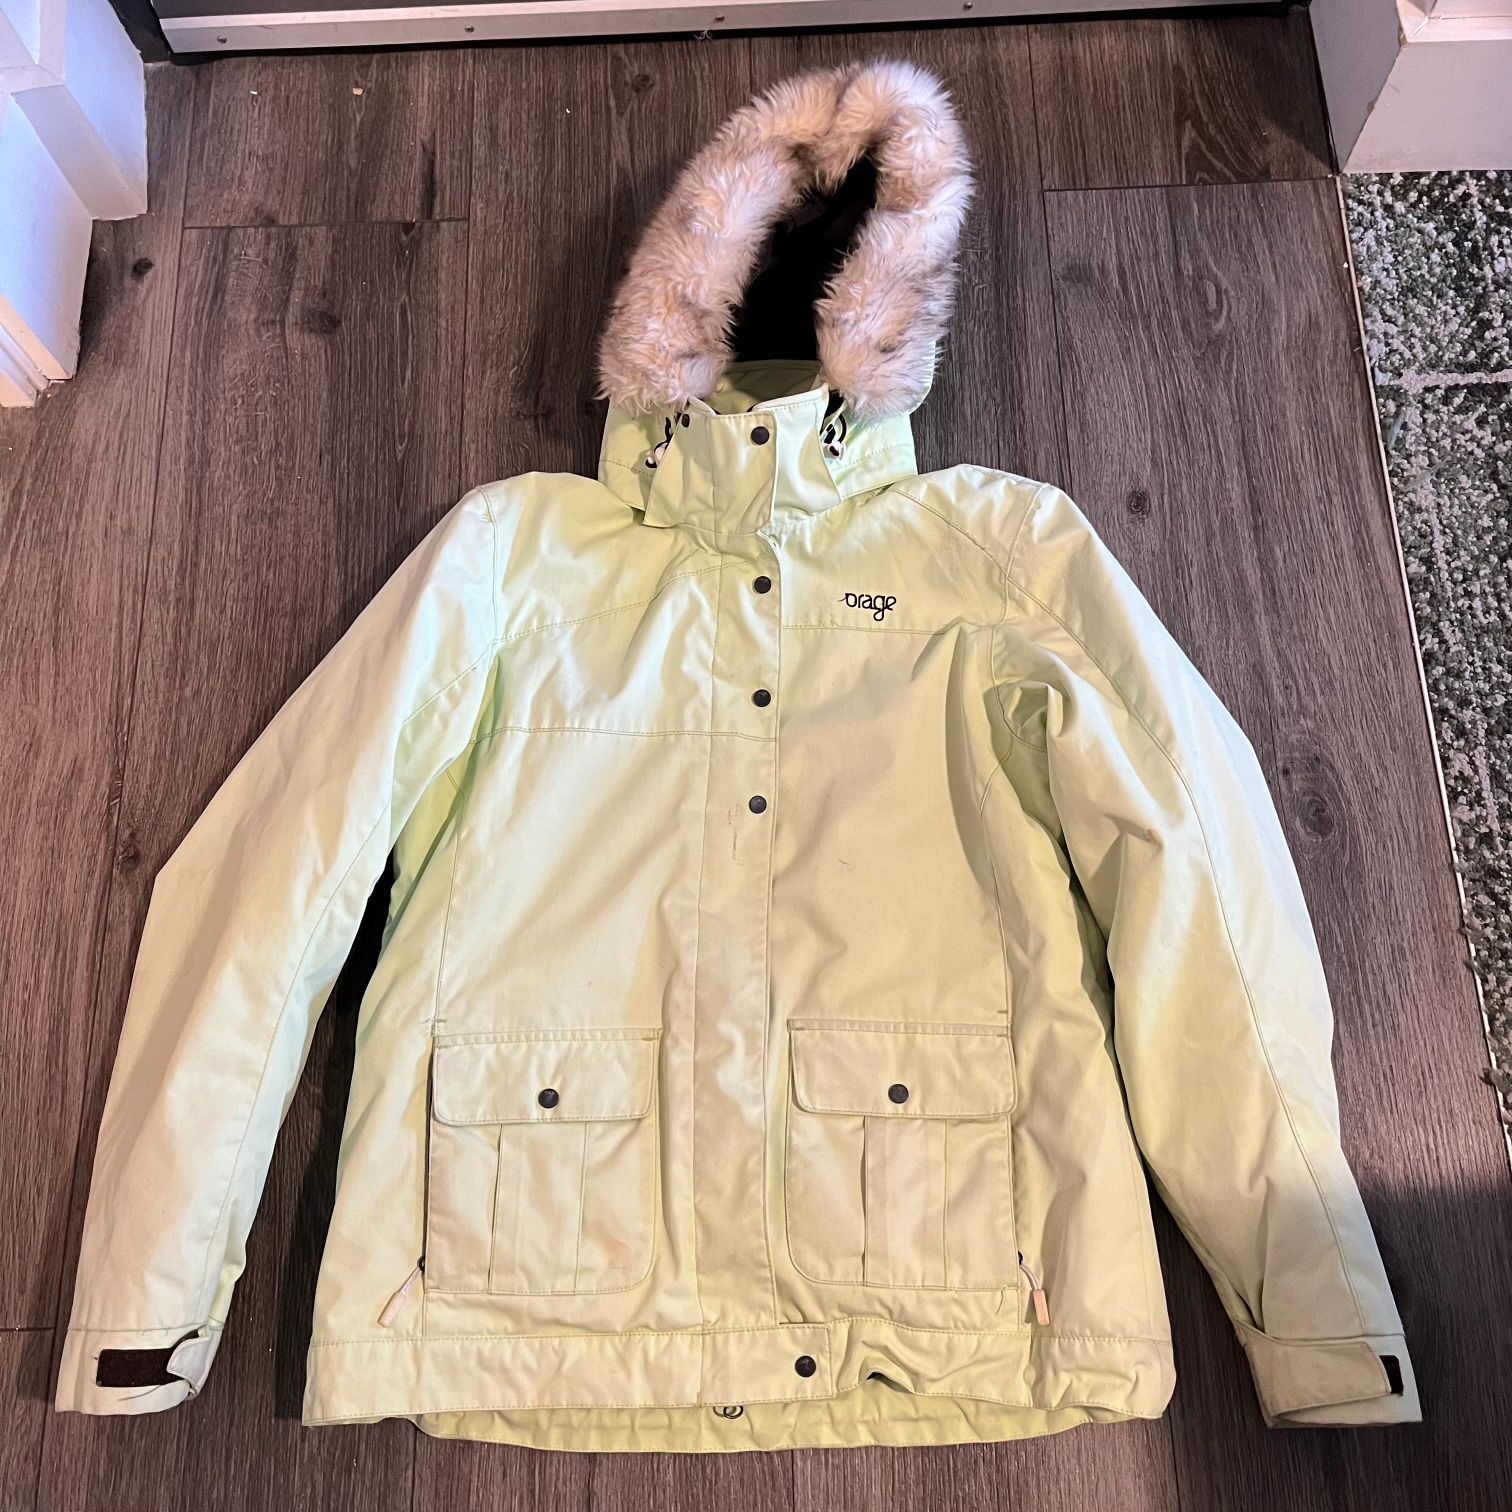 Used Women’s Ski Jacket - Size Medium, Green